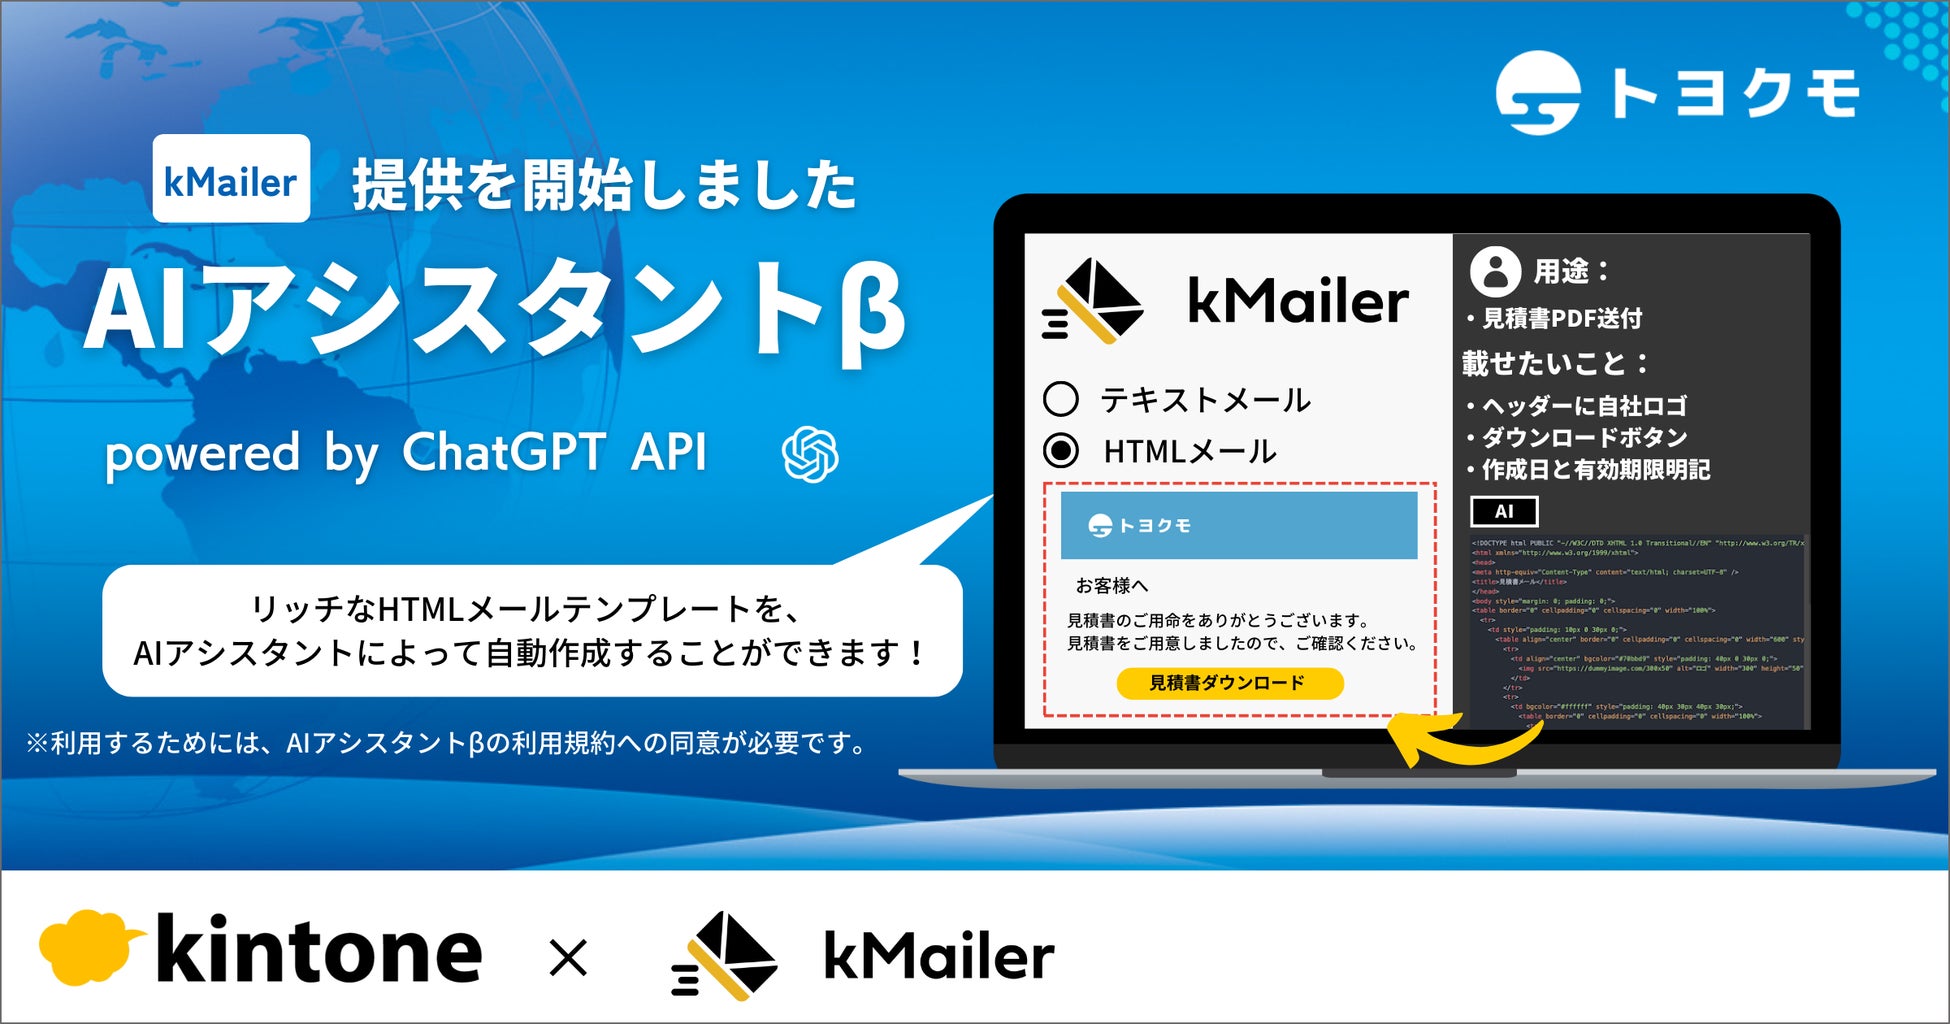 「kMailer」が最新AI「ChatGPT」を活用した「AIアシスタントβ」をリリース！ノーコードでリッチなHTMLメール作成・送信が可能に。トヨクモはAIを活用し、非効率な仕事を削減することを目指す。